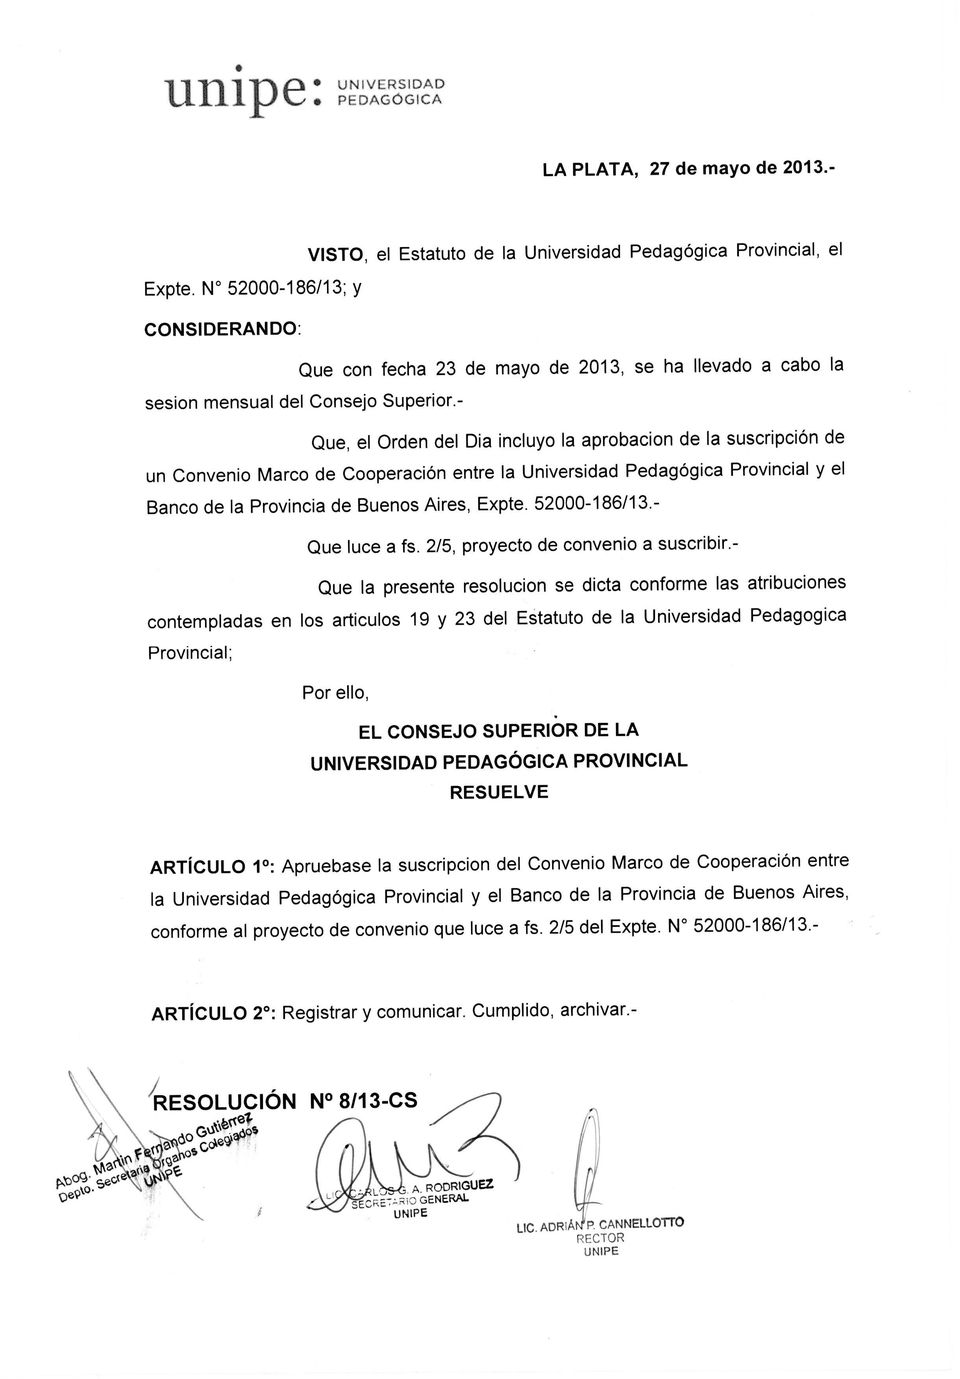 - Que, el Orden del Dia incluyo la aprobacion de la suscripción de un Convenio Marco de Cooperación entre la Universidad Pedagógica Provincial y el Banco de la Provincia de Buenos Aires, Expte.